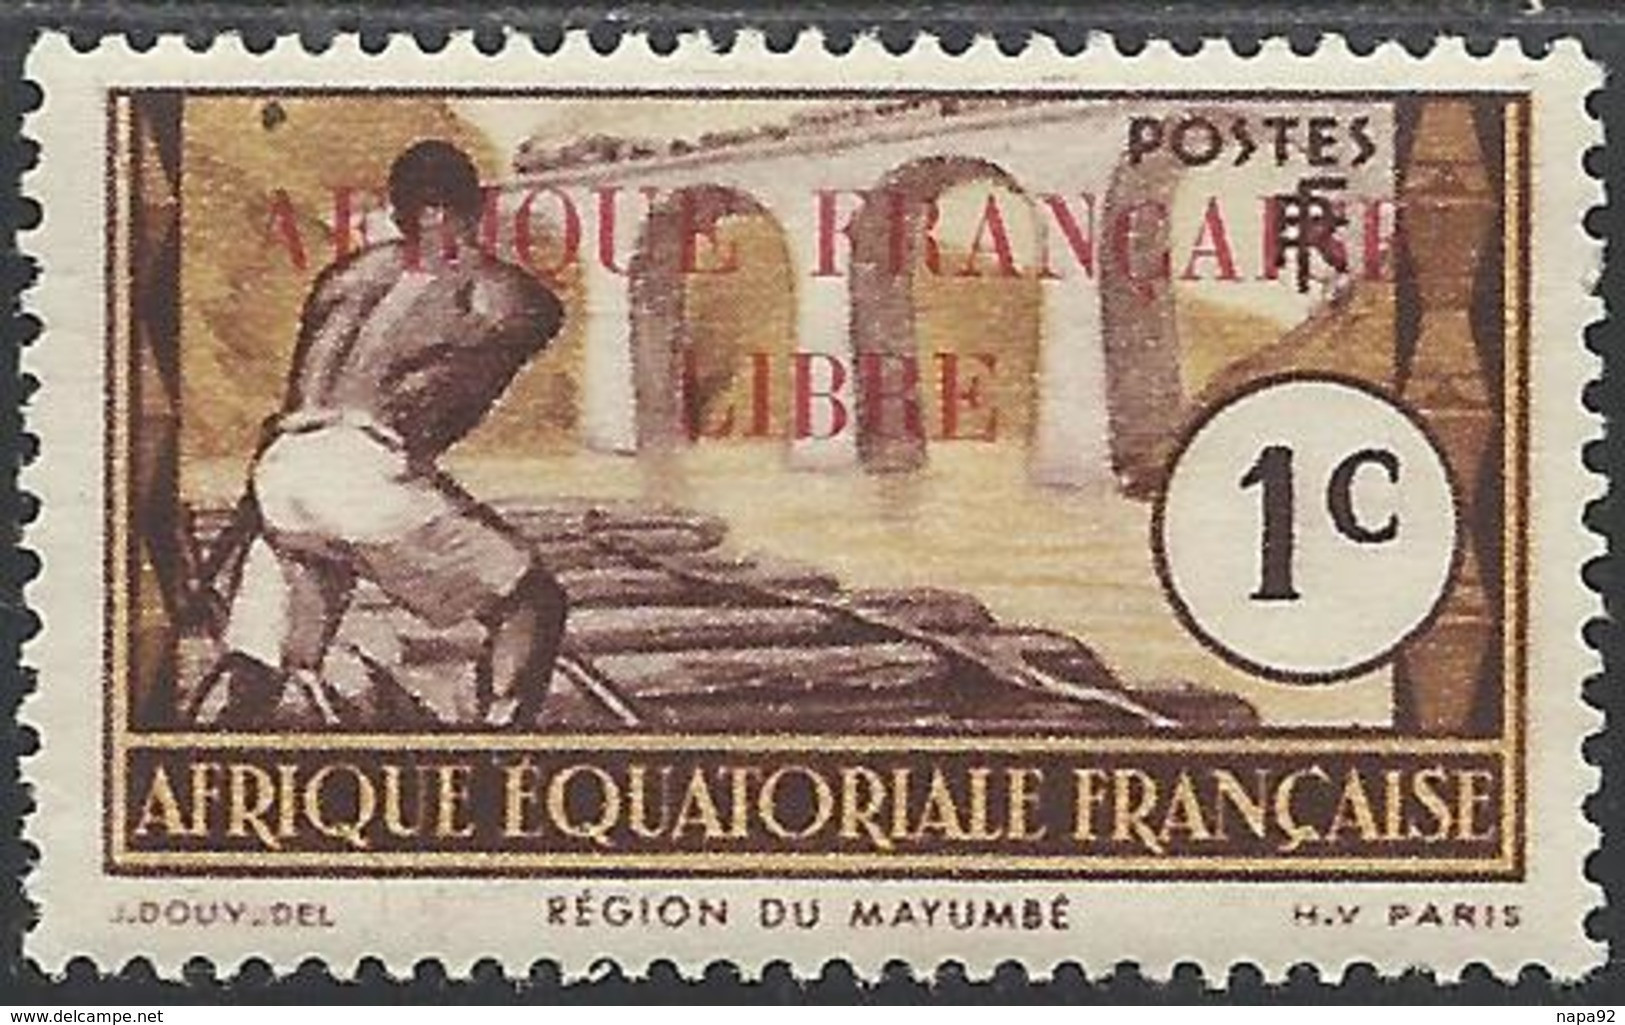 AFRIQUE EQUATORIALE FRANCAISE - AEF - A.E.F. - 1940 - YT 92** - Ungebraucht